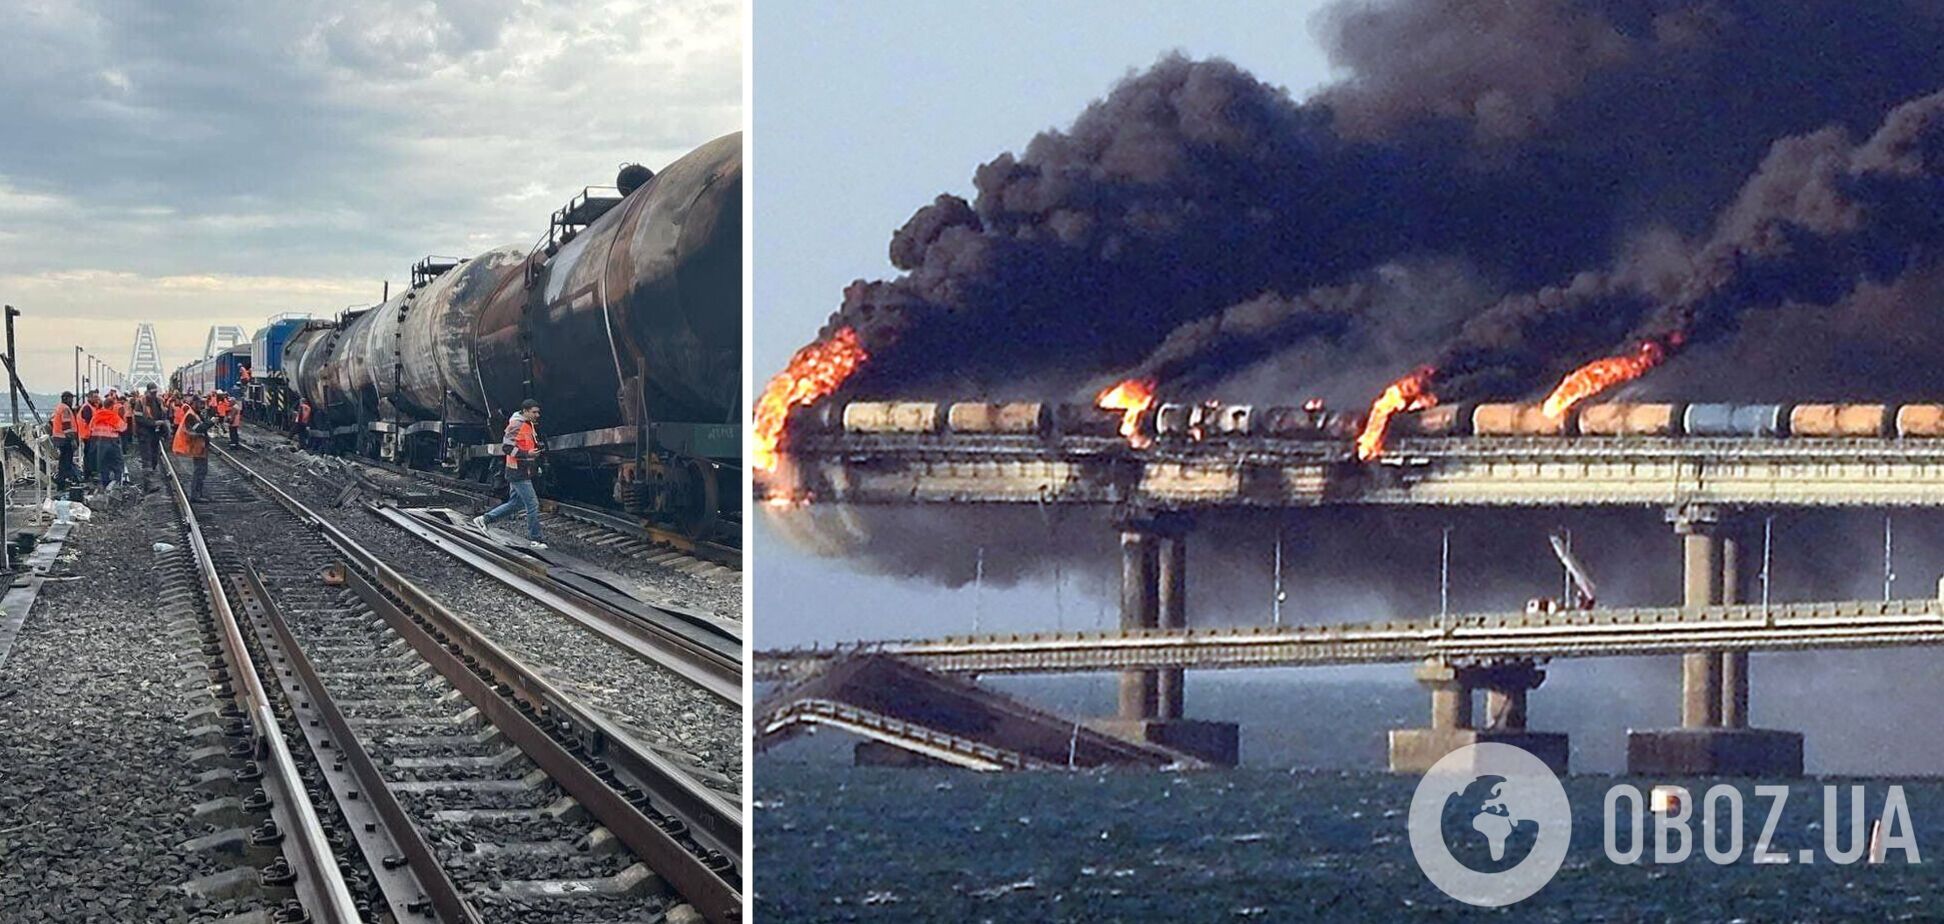 Безпека мосту в епіцентрі пожежі під великим питанням: з’явилося нове відео з місця вибуху на Кримському мосту 